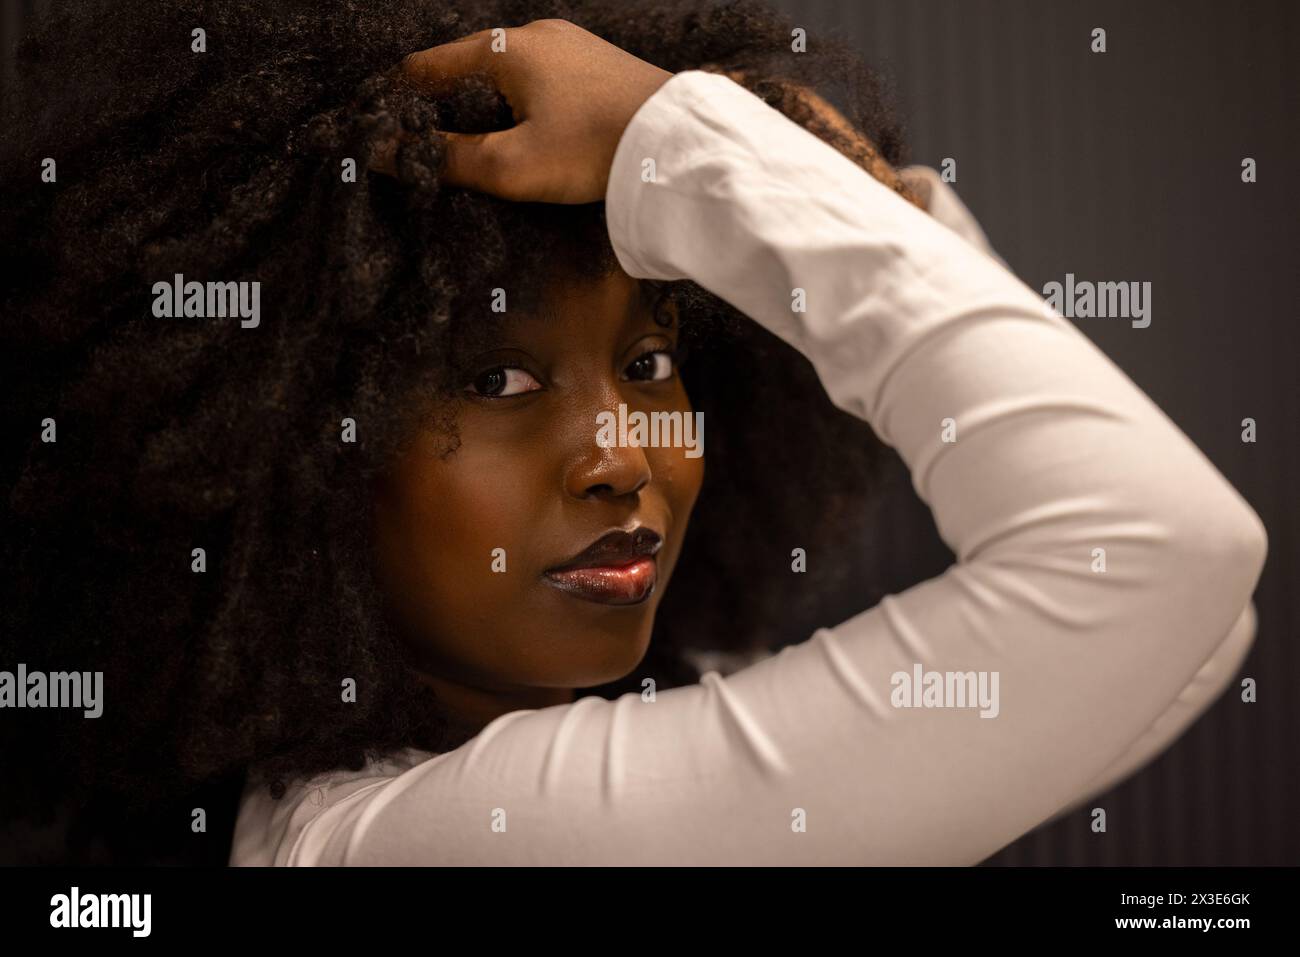 Das intime Porträt zeigt eine schwarze Frau mit üppigem Afro-Haar, die ein weißes langärmeliges Oberteil trägt. Ihre Pose ist anmutig, und der dunkle Hintergrund unterstreicht ihren nachdenklichen Ausdruck und vermittelt eine Geschichte von Eleganz und Introspektion. Elegante schwarze Frau mit Afro-Haar in einem weißen Oberteil. Hochwertige Fotos Stockfoto